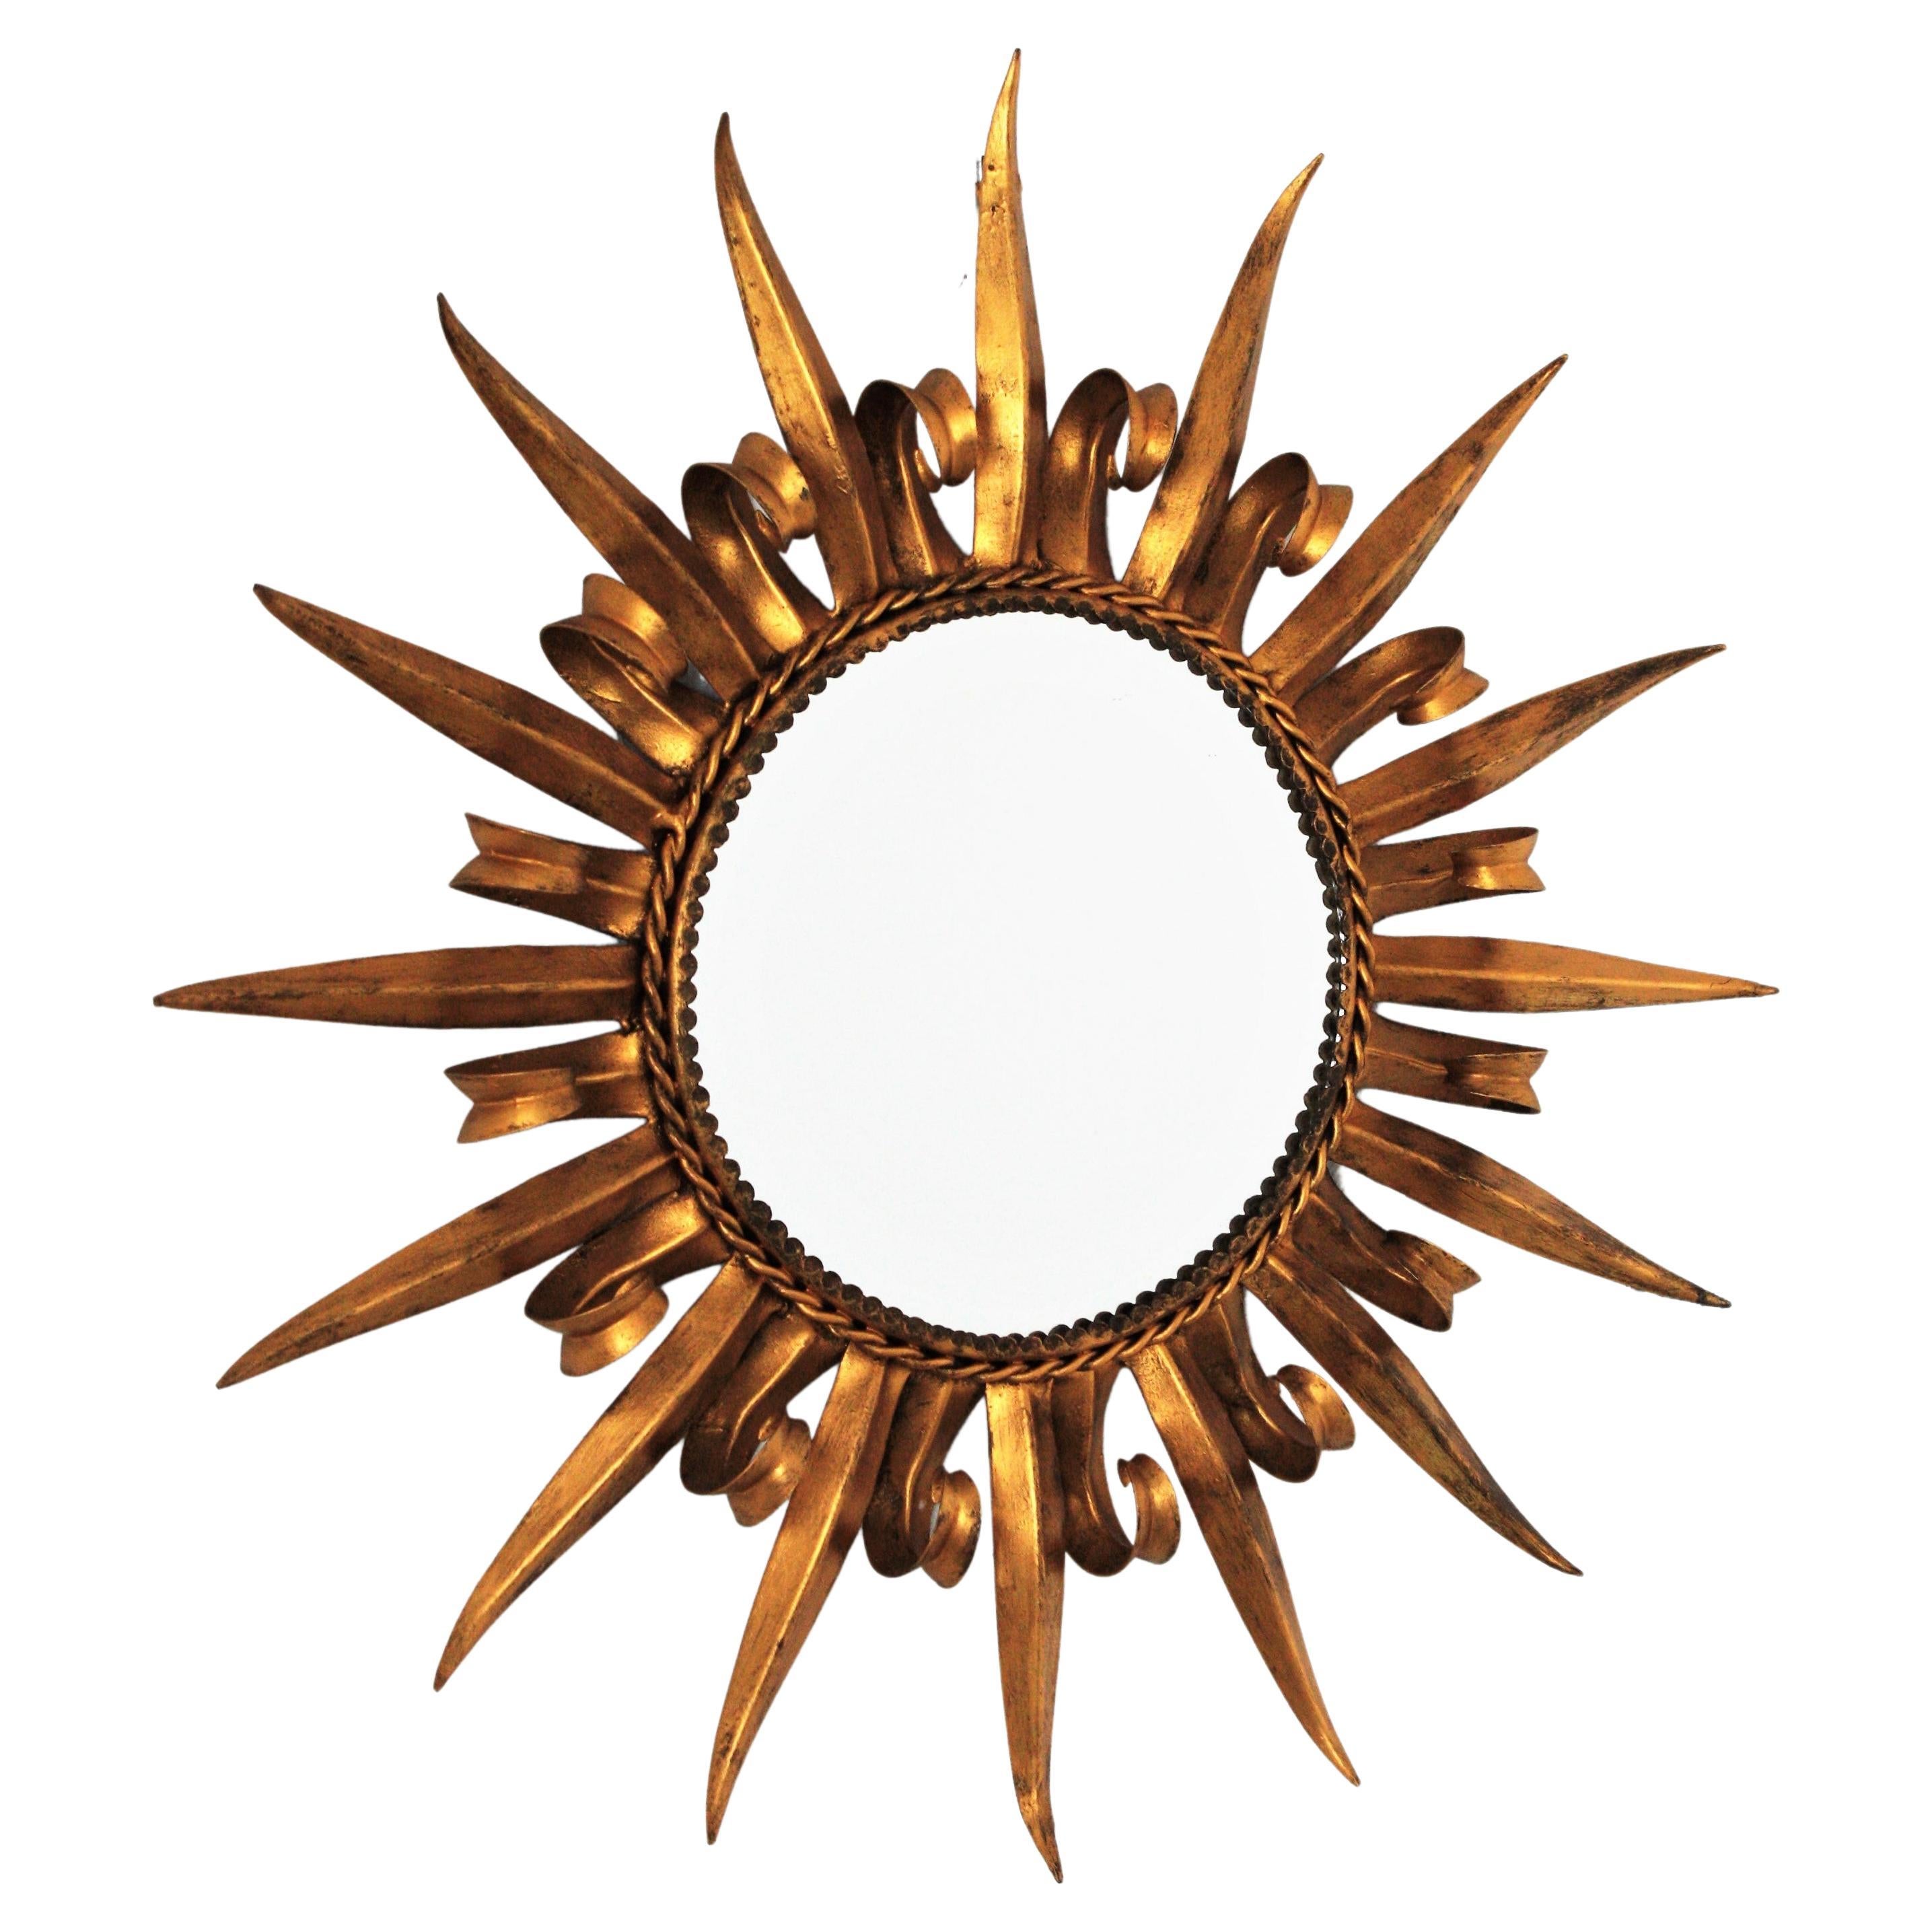 Miroir français en métal doré à rayons de soleil Eyelash Design, années 1950
Charmant miroir rond en fer doré à double couche de cils, martelé à la main, datant des années 1950.
Le cadre est constitué d'une alternance de poutres courbes en forme de